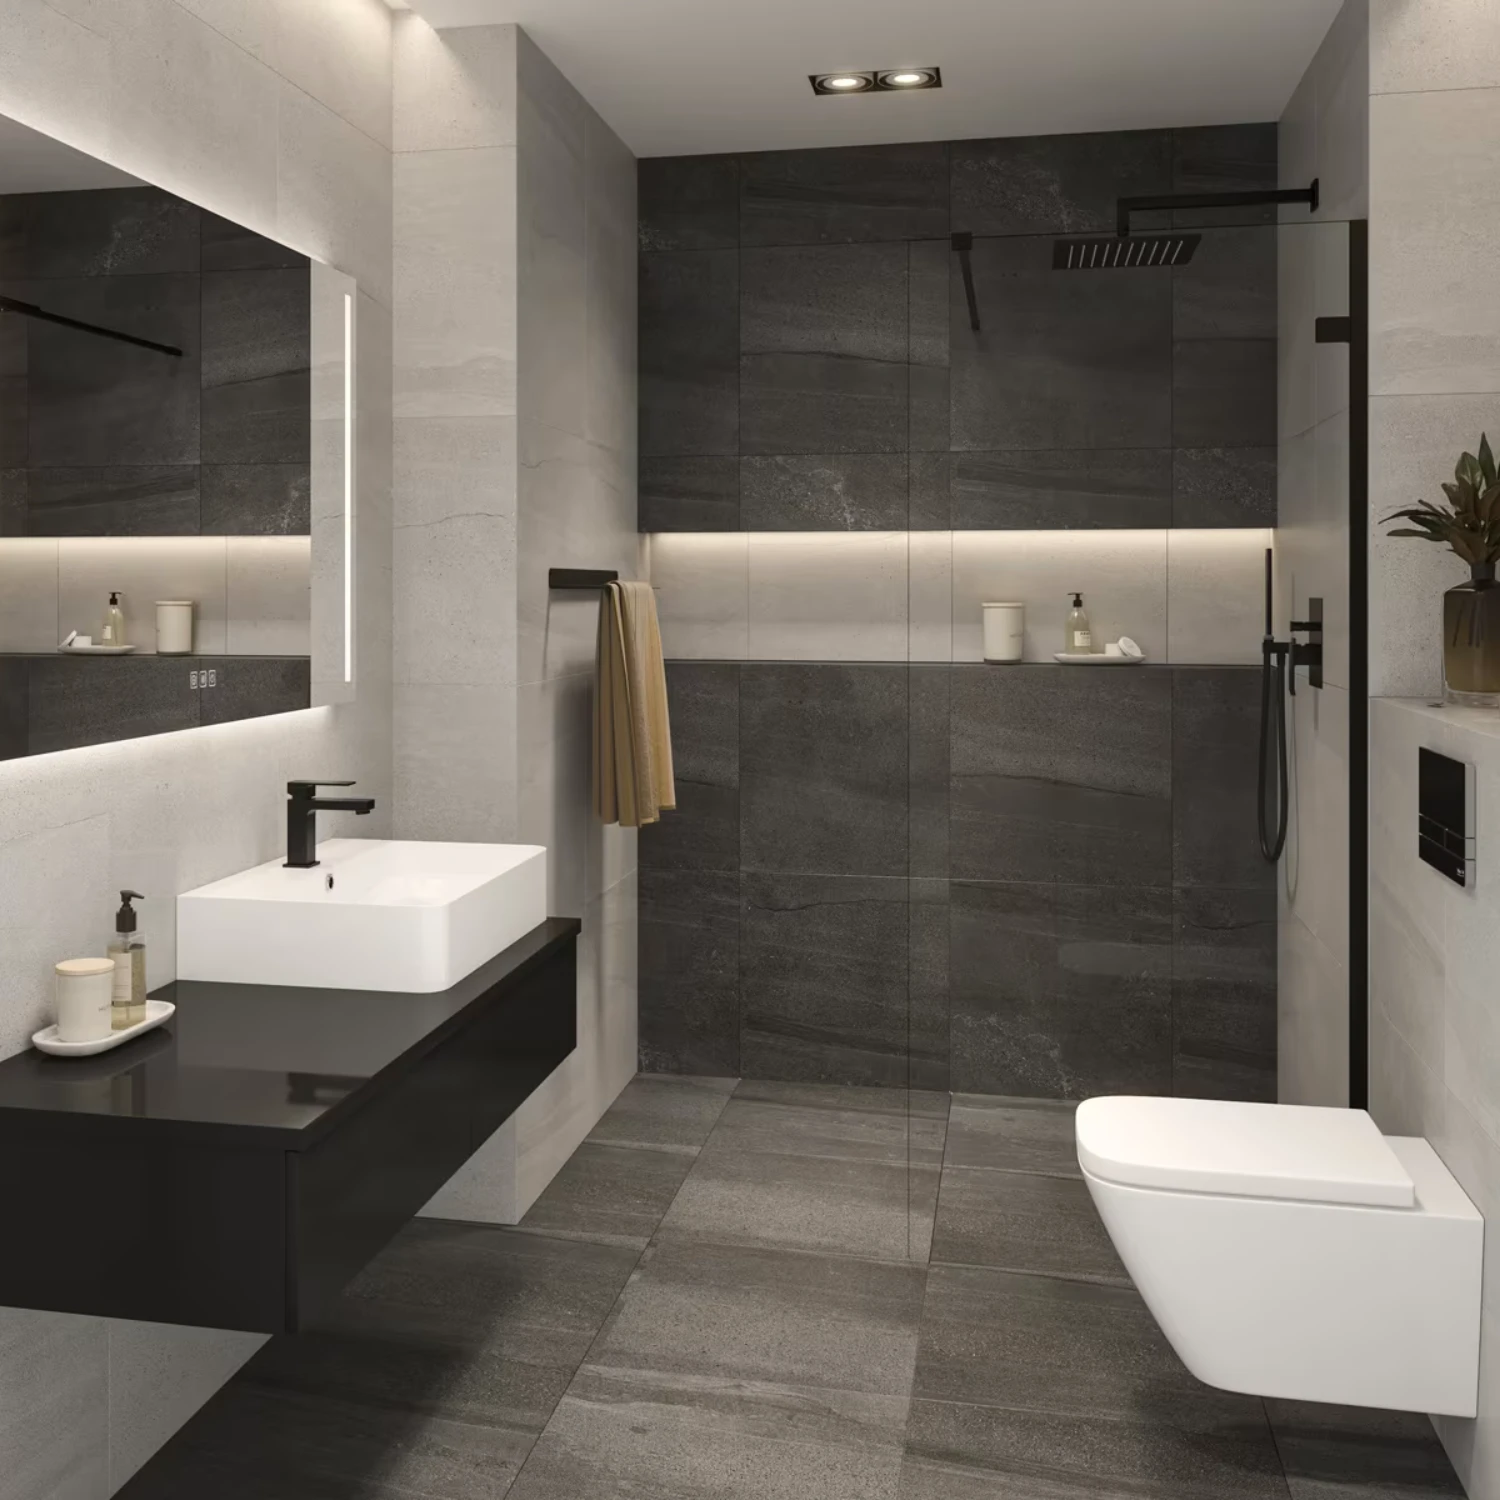 modernes badezimmer mit grauen fliesen, weißer keramik und schwarzen armaturen und asseccoires